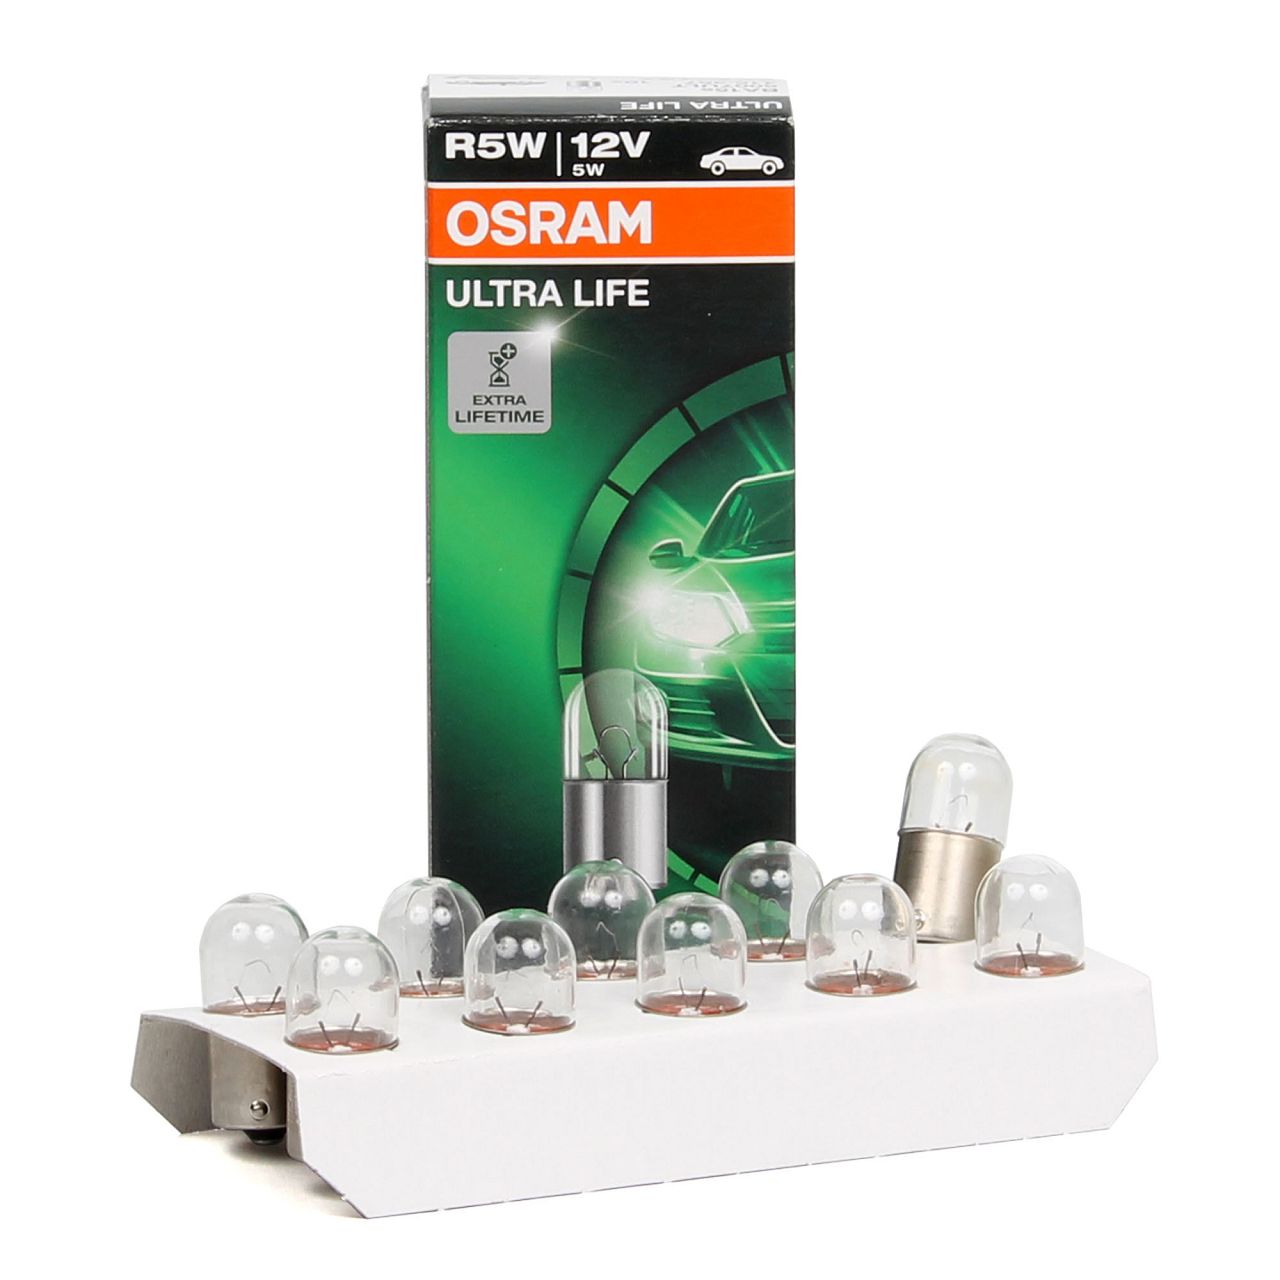 OSRAM Halogenlampen / Glühlampen / LEDs - 5007ULT 